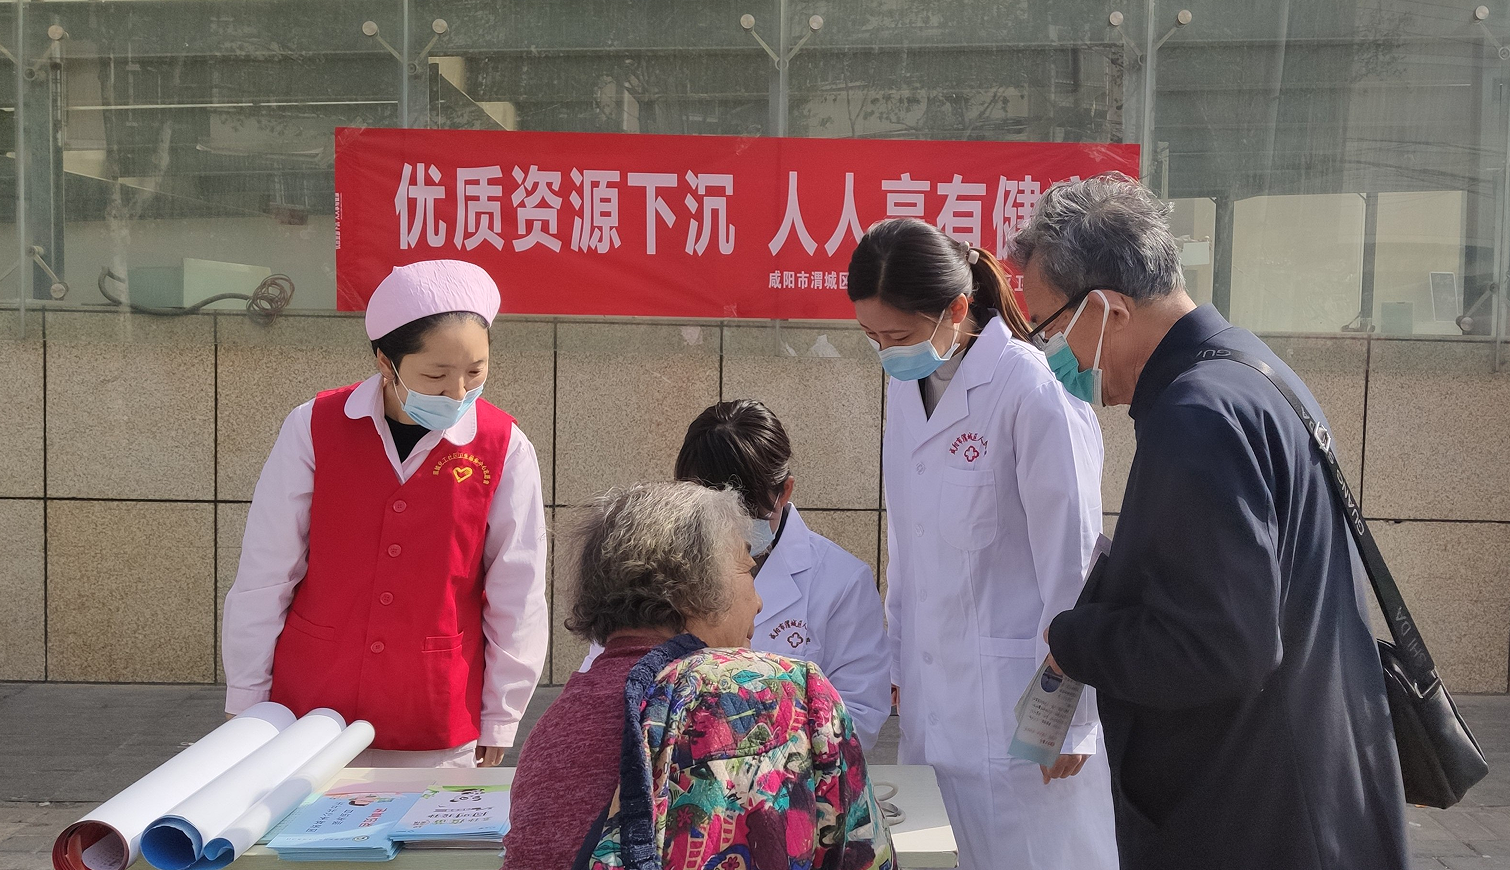 渭城区人民医院开展“世界卫生日”宣传义诊活动